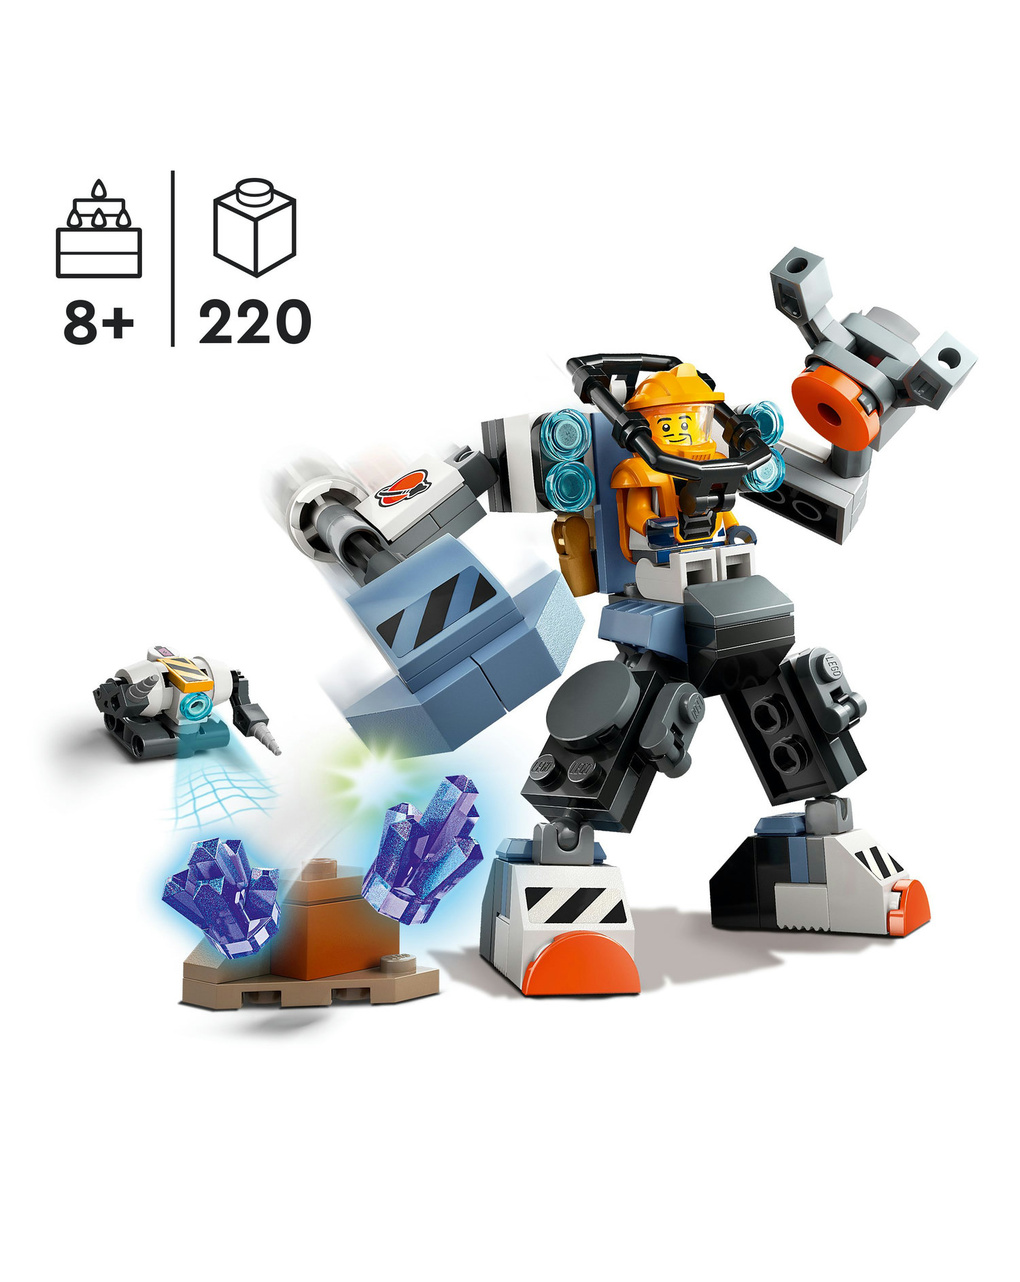 Mech di costruzione spaziale - 60428 - lego city - LEGO